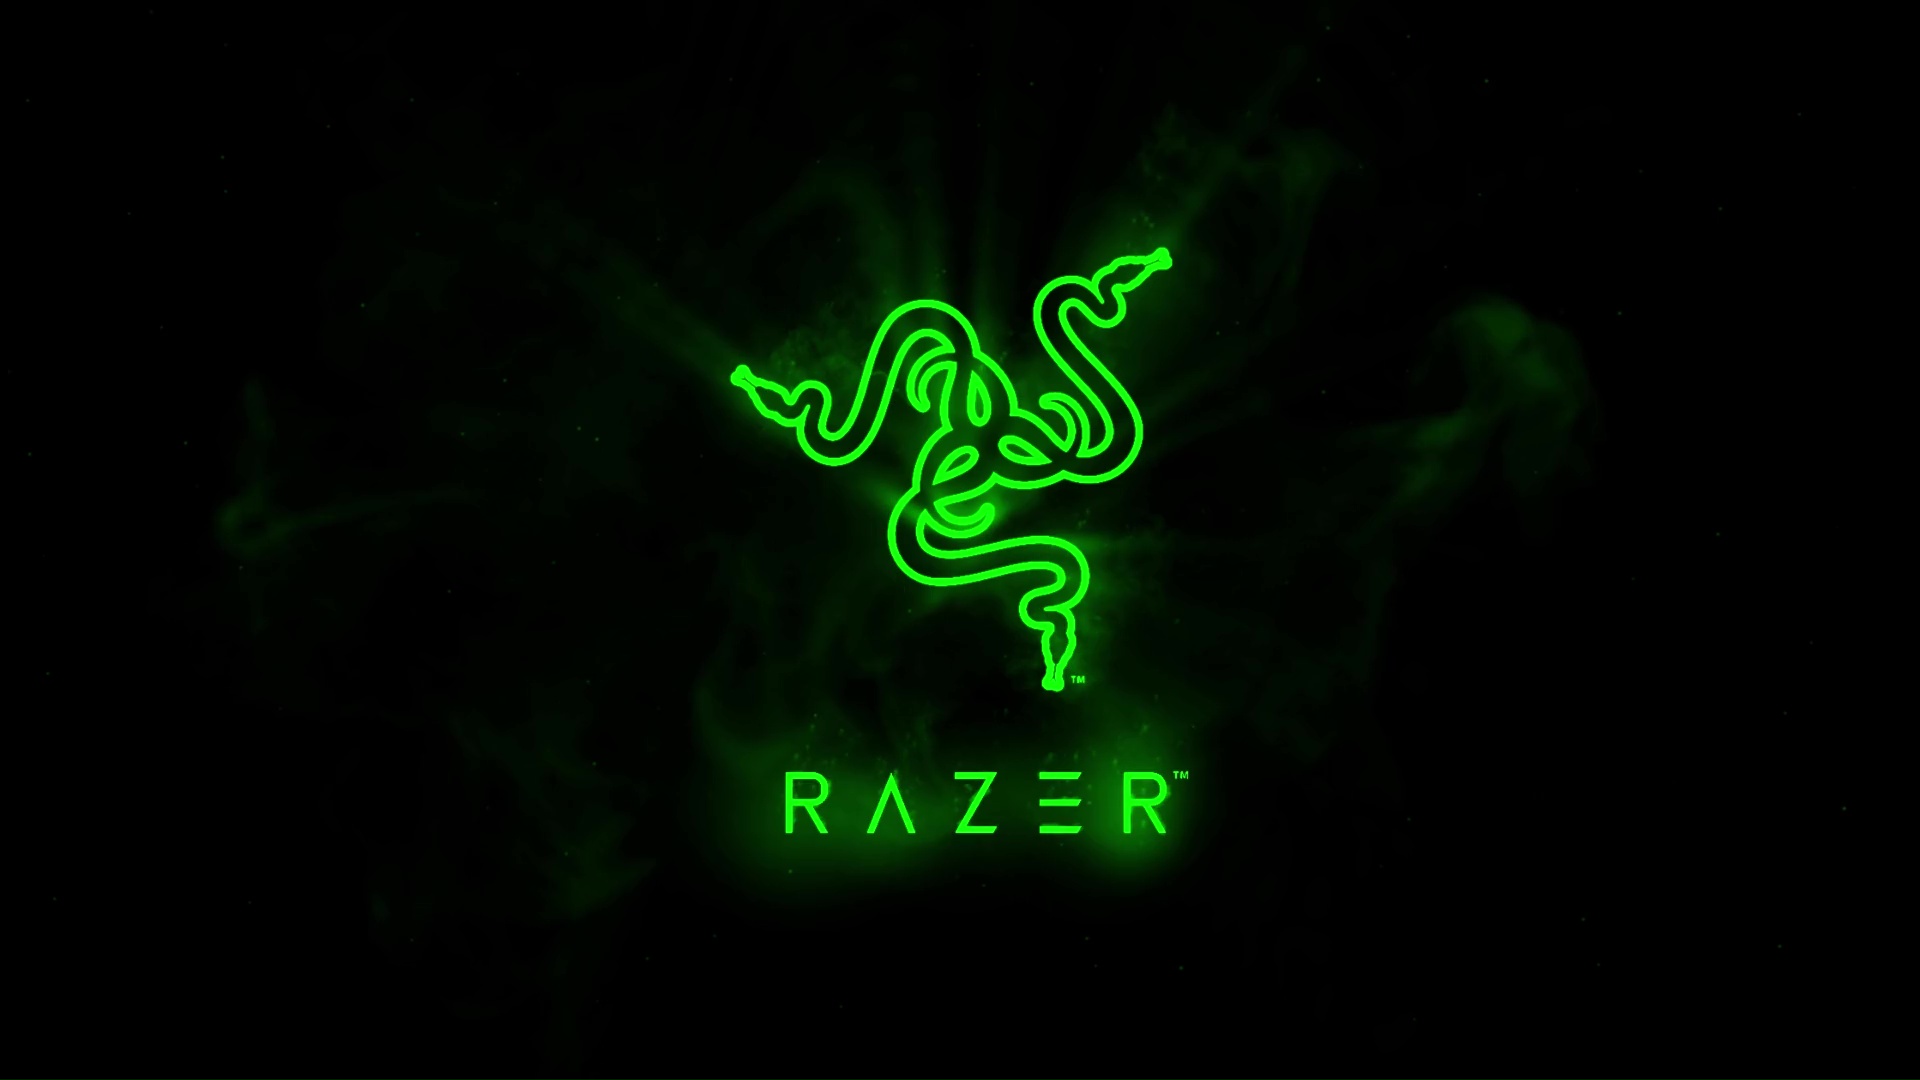 Hình nền Razer đẹp và chất  Hình nền máy tính cho game thủ